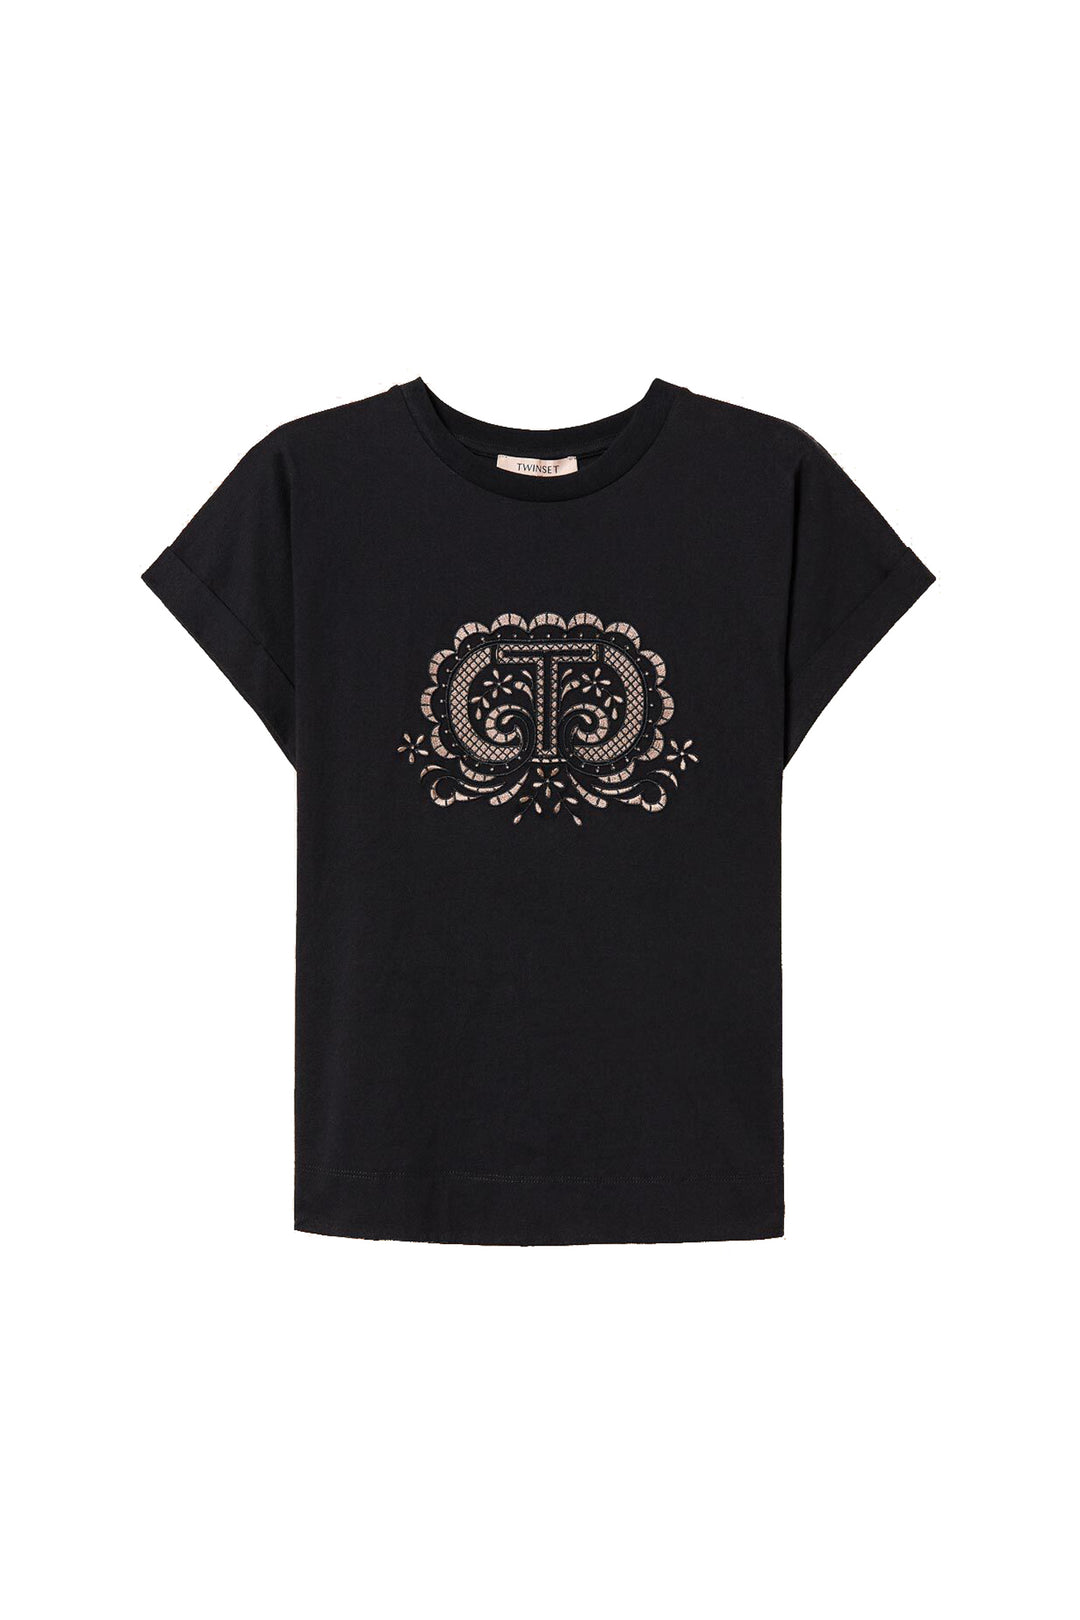 TWINSET T-shirt nera con ricamo Oval T bicolore - Mancinelli 1954